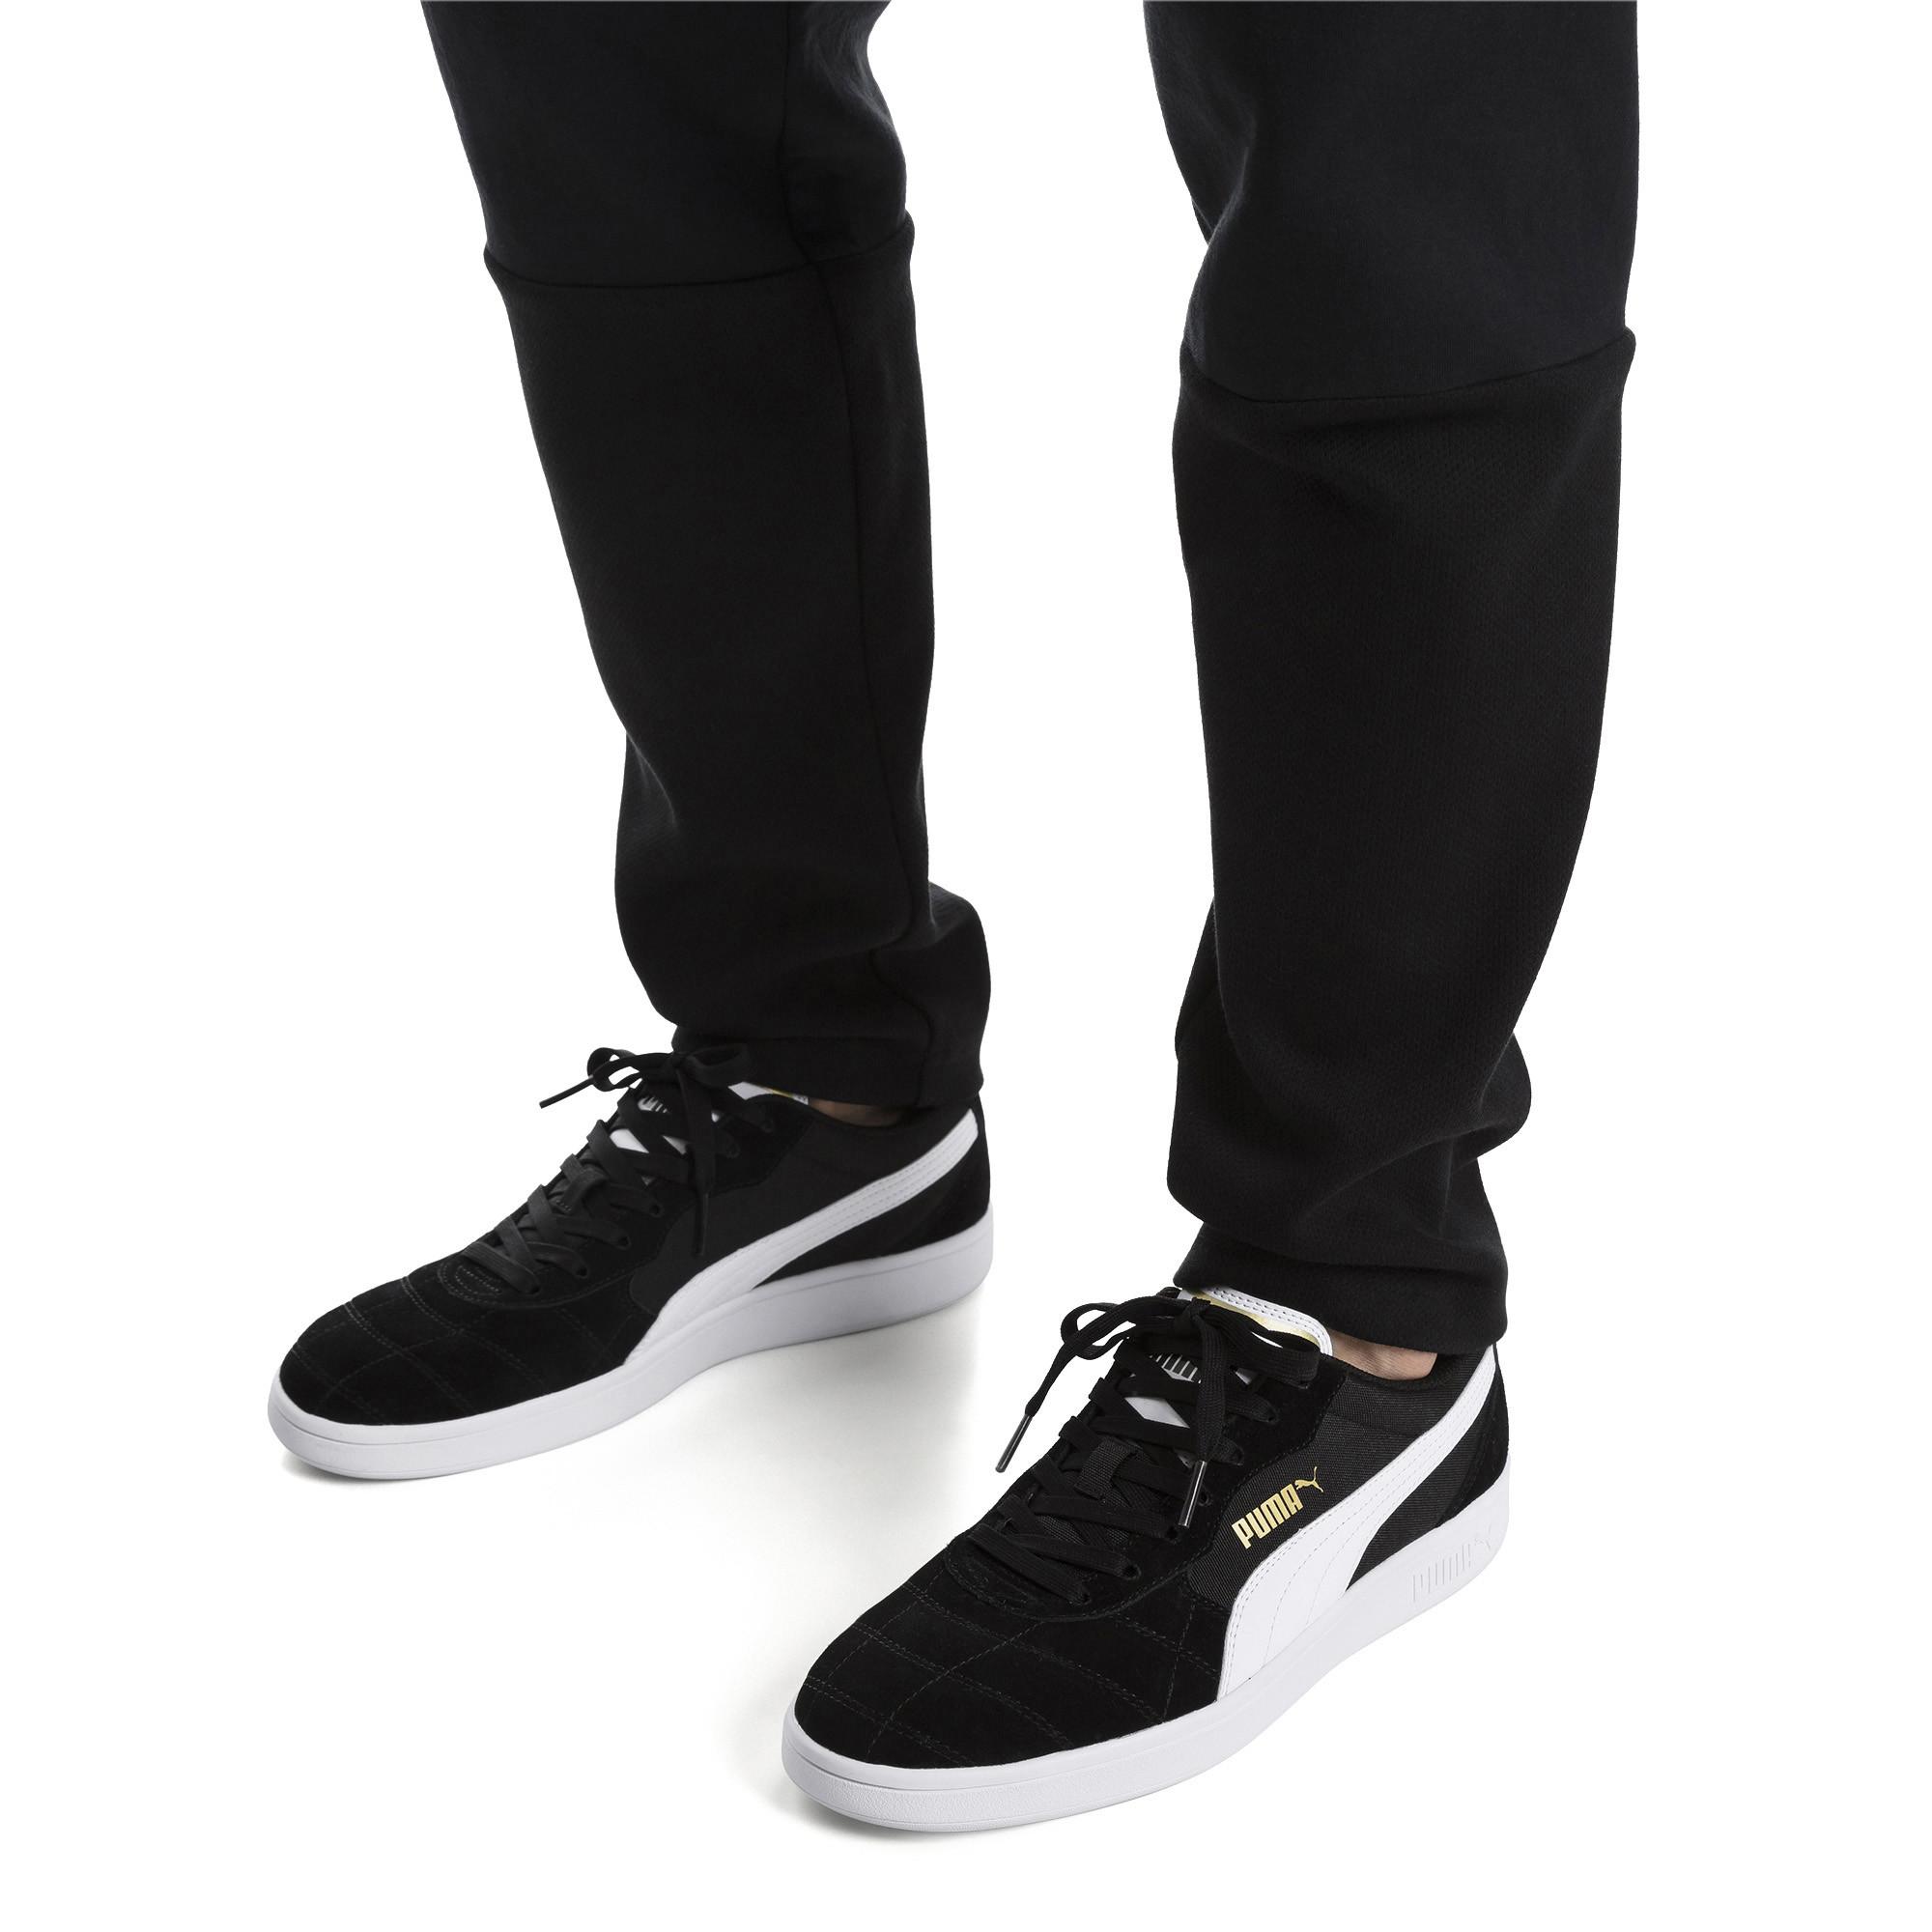 PUMA Astro Kick Sneaker in Black/White 